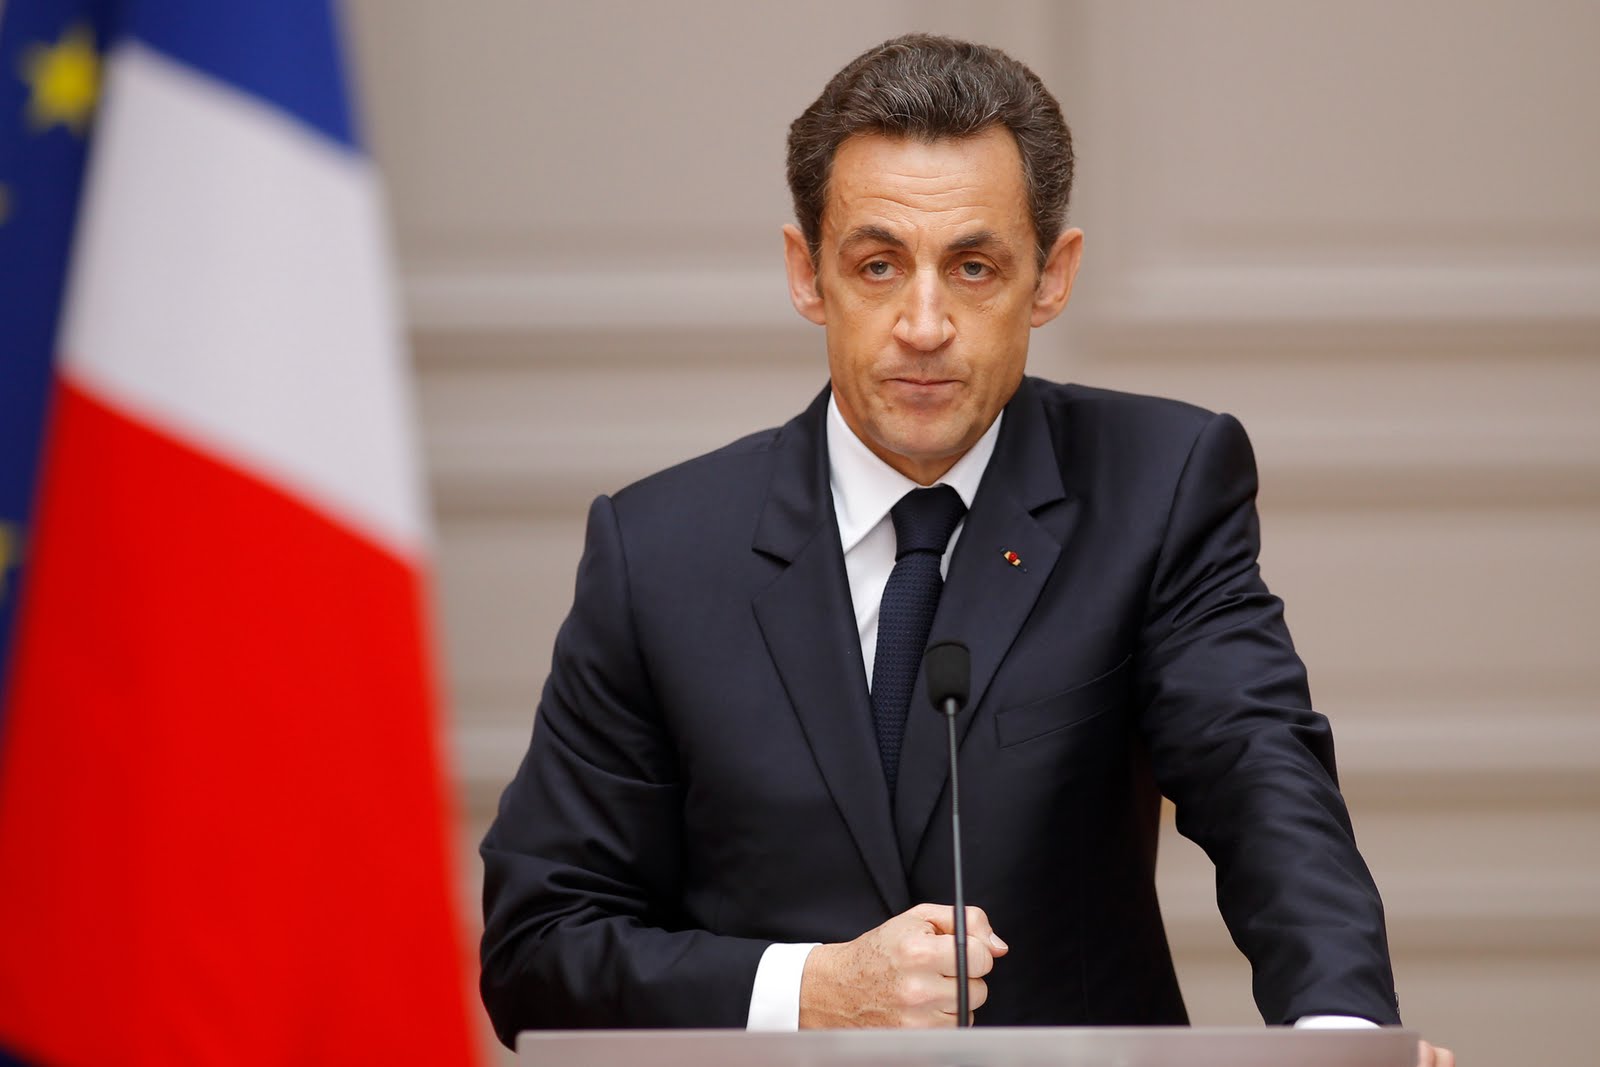 Впервые в истории Франции экс-президент предстанет перед судом